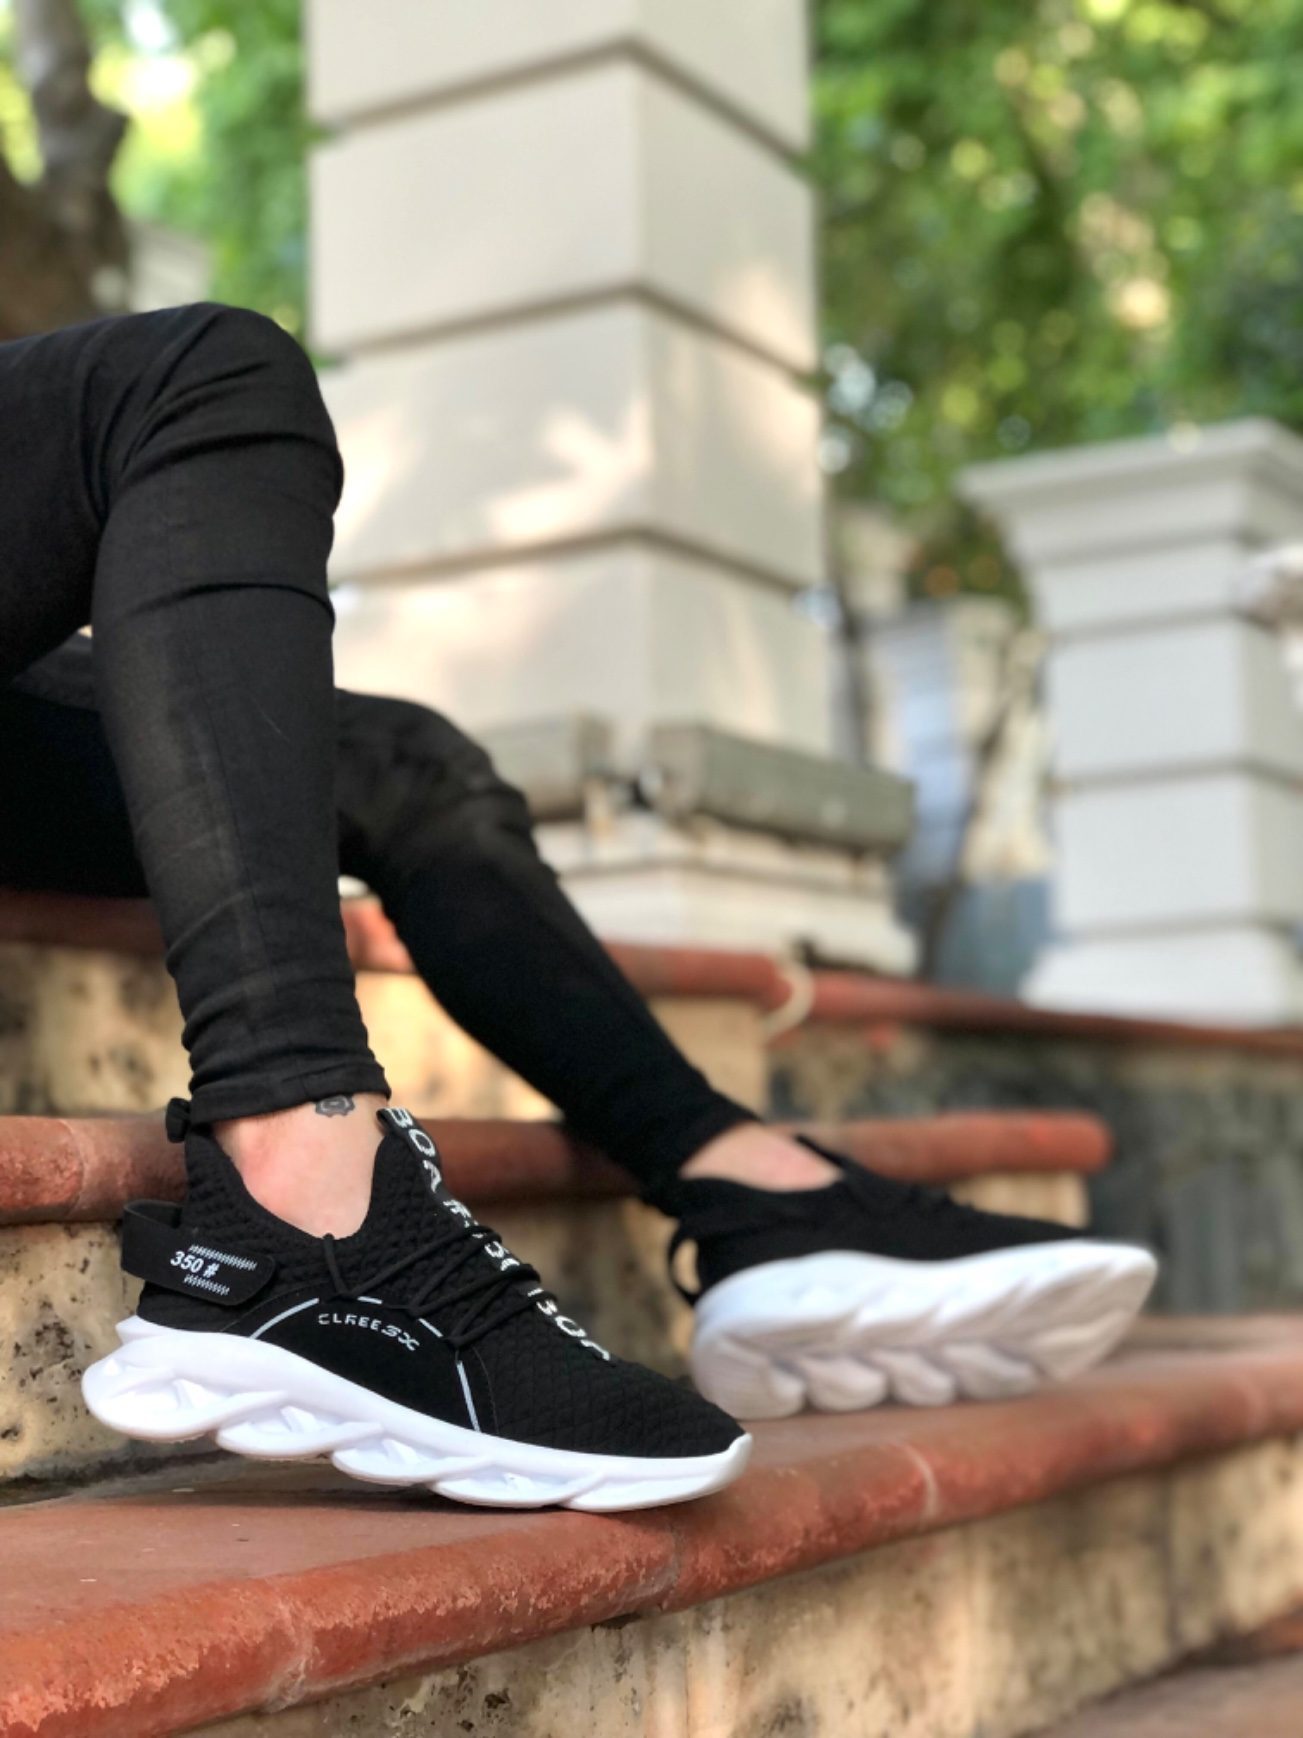 CLZ946 Yüksek Taban Tarz Sneakers Cırt Detaylı Siyah Beyaz Tabanlı Erkek Spor Ayakkabısı